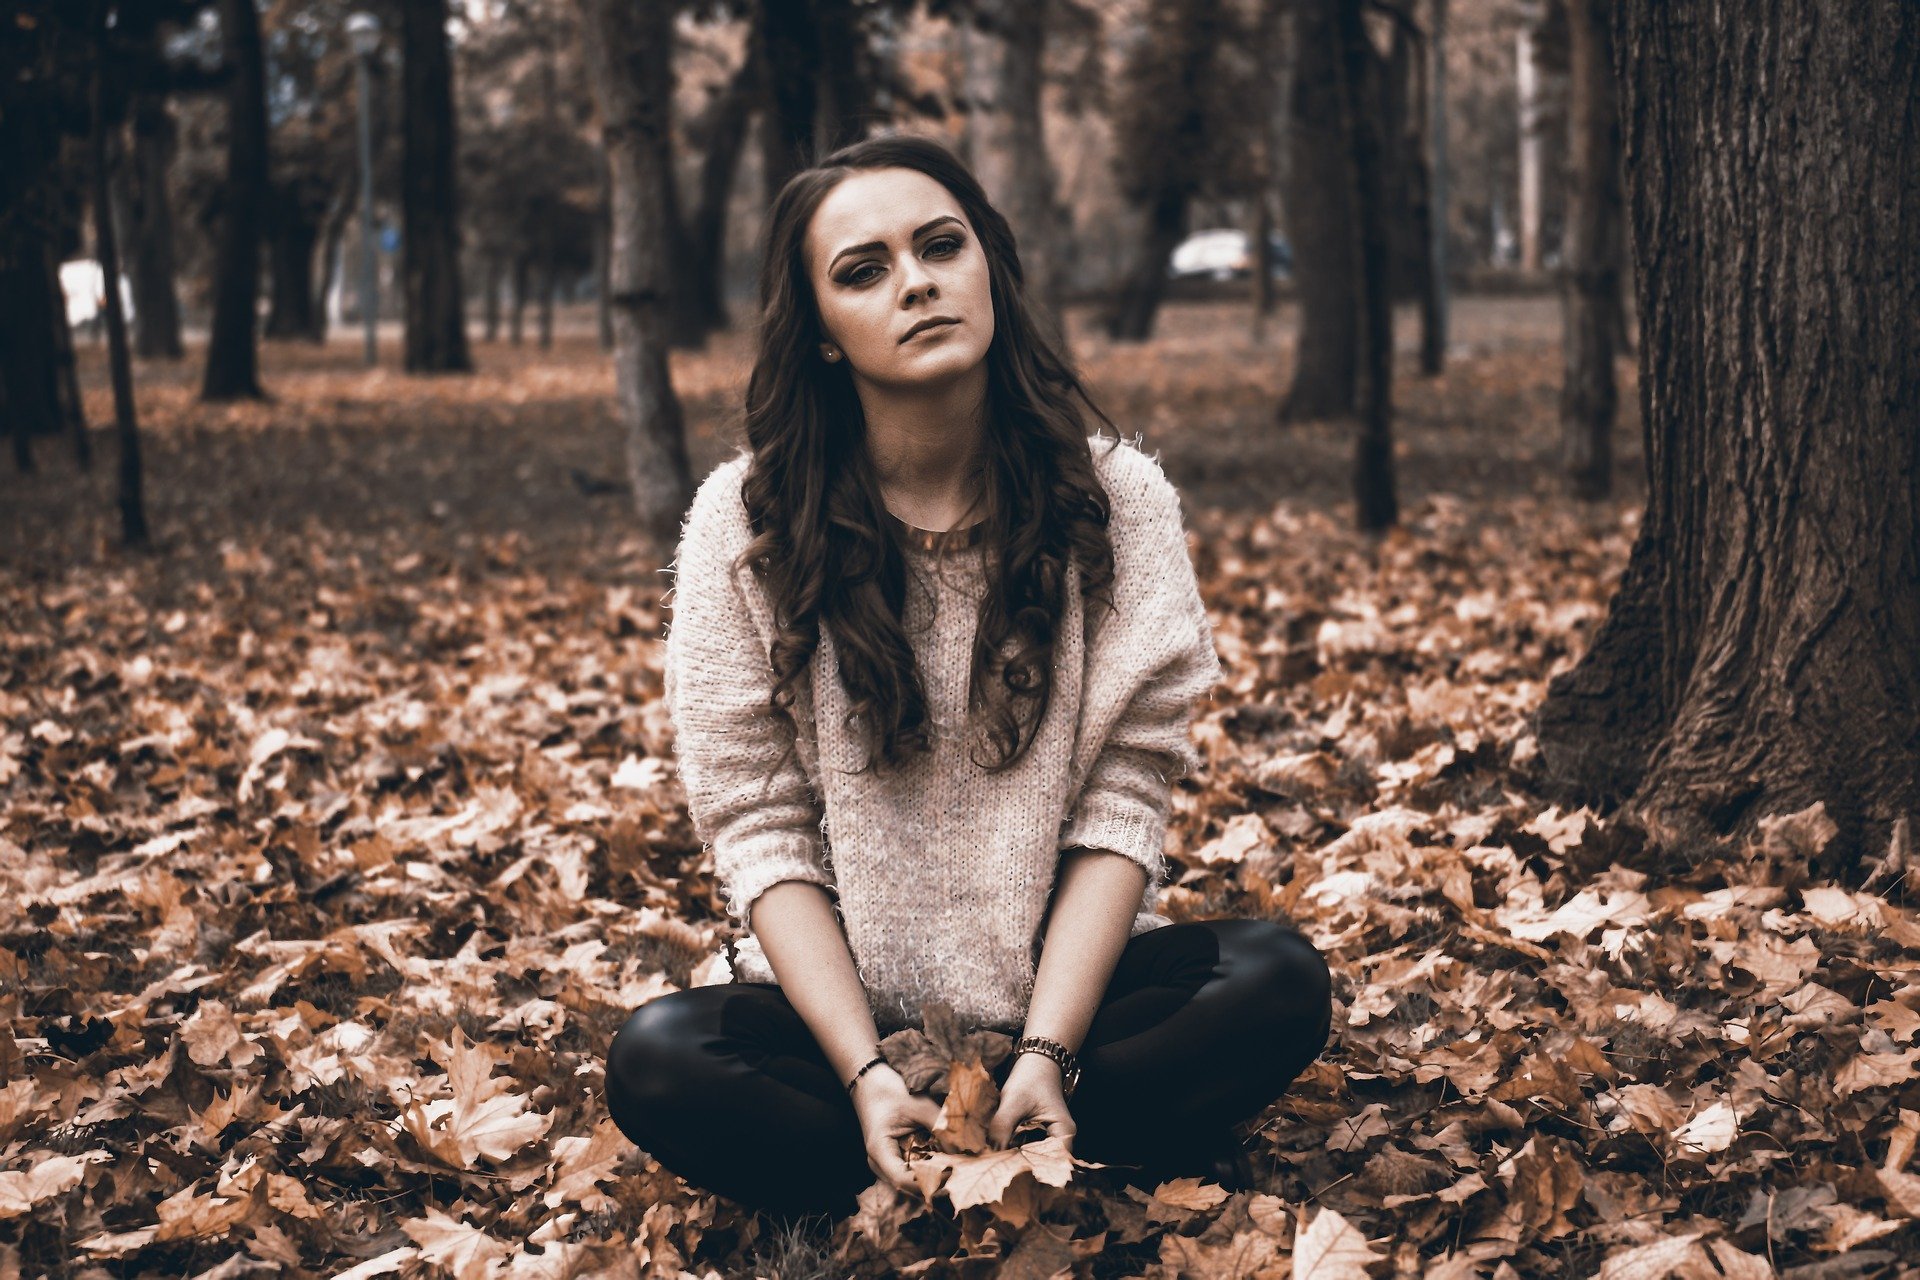 Mulher sentada em floresta de folhas secas, com expressão séria